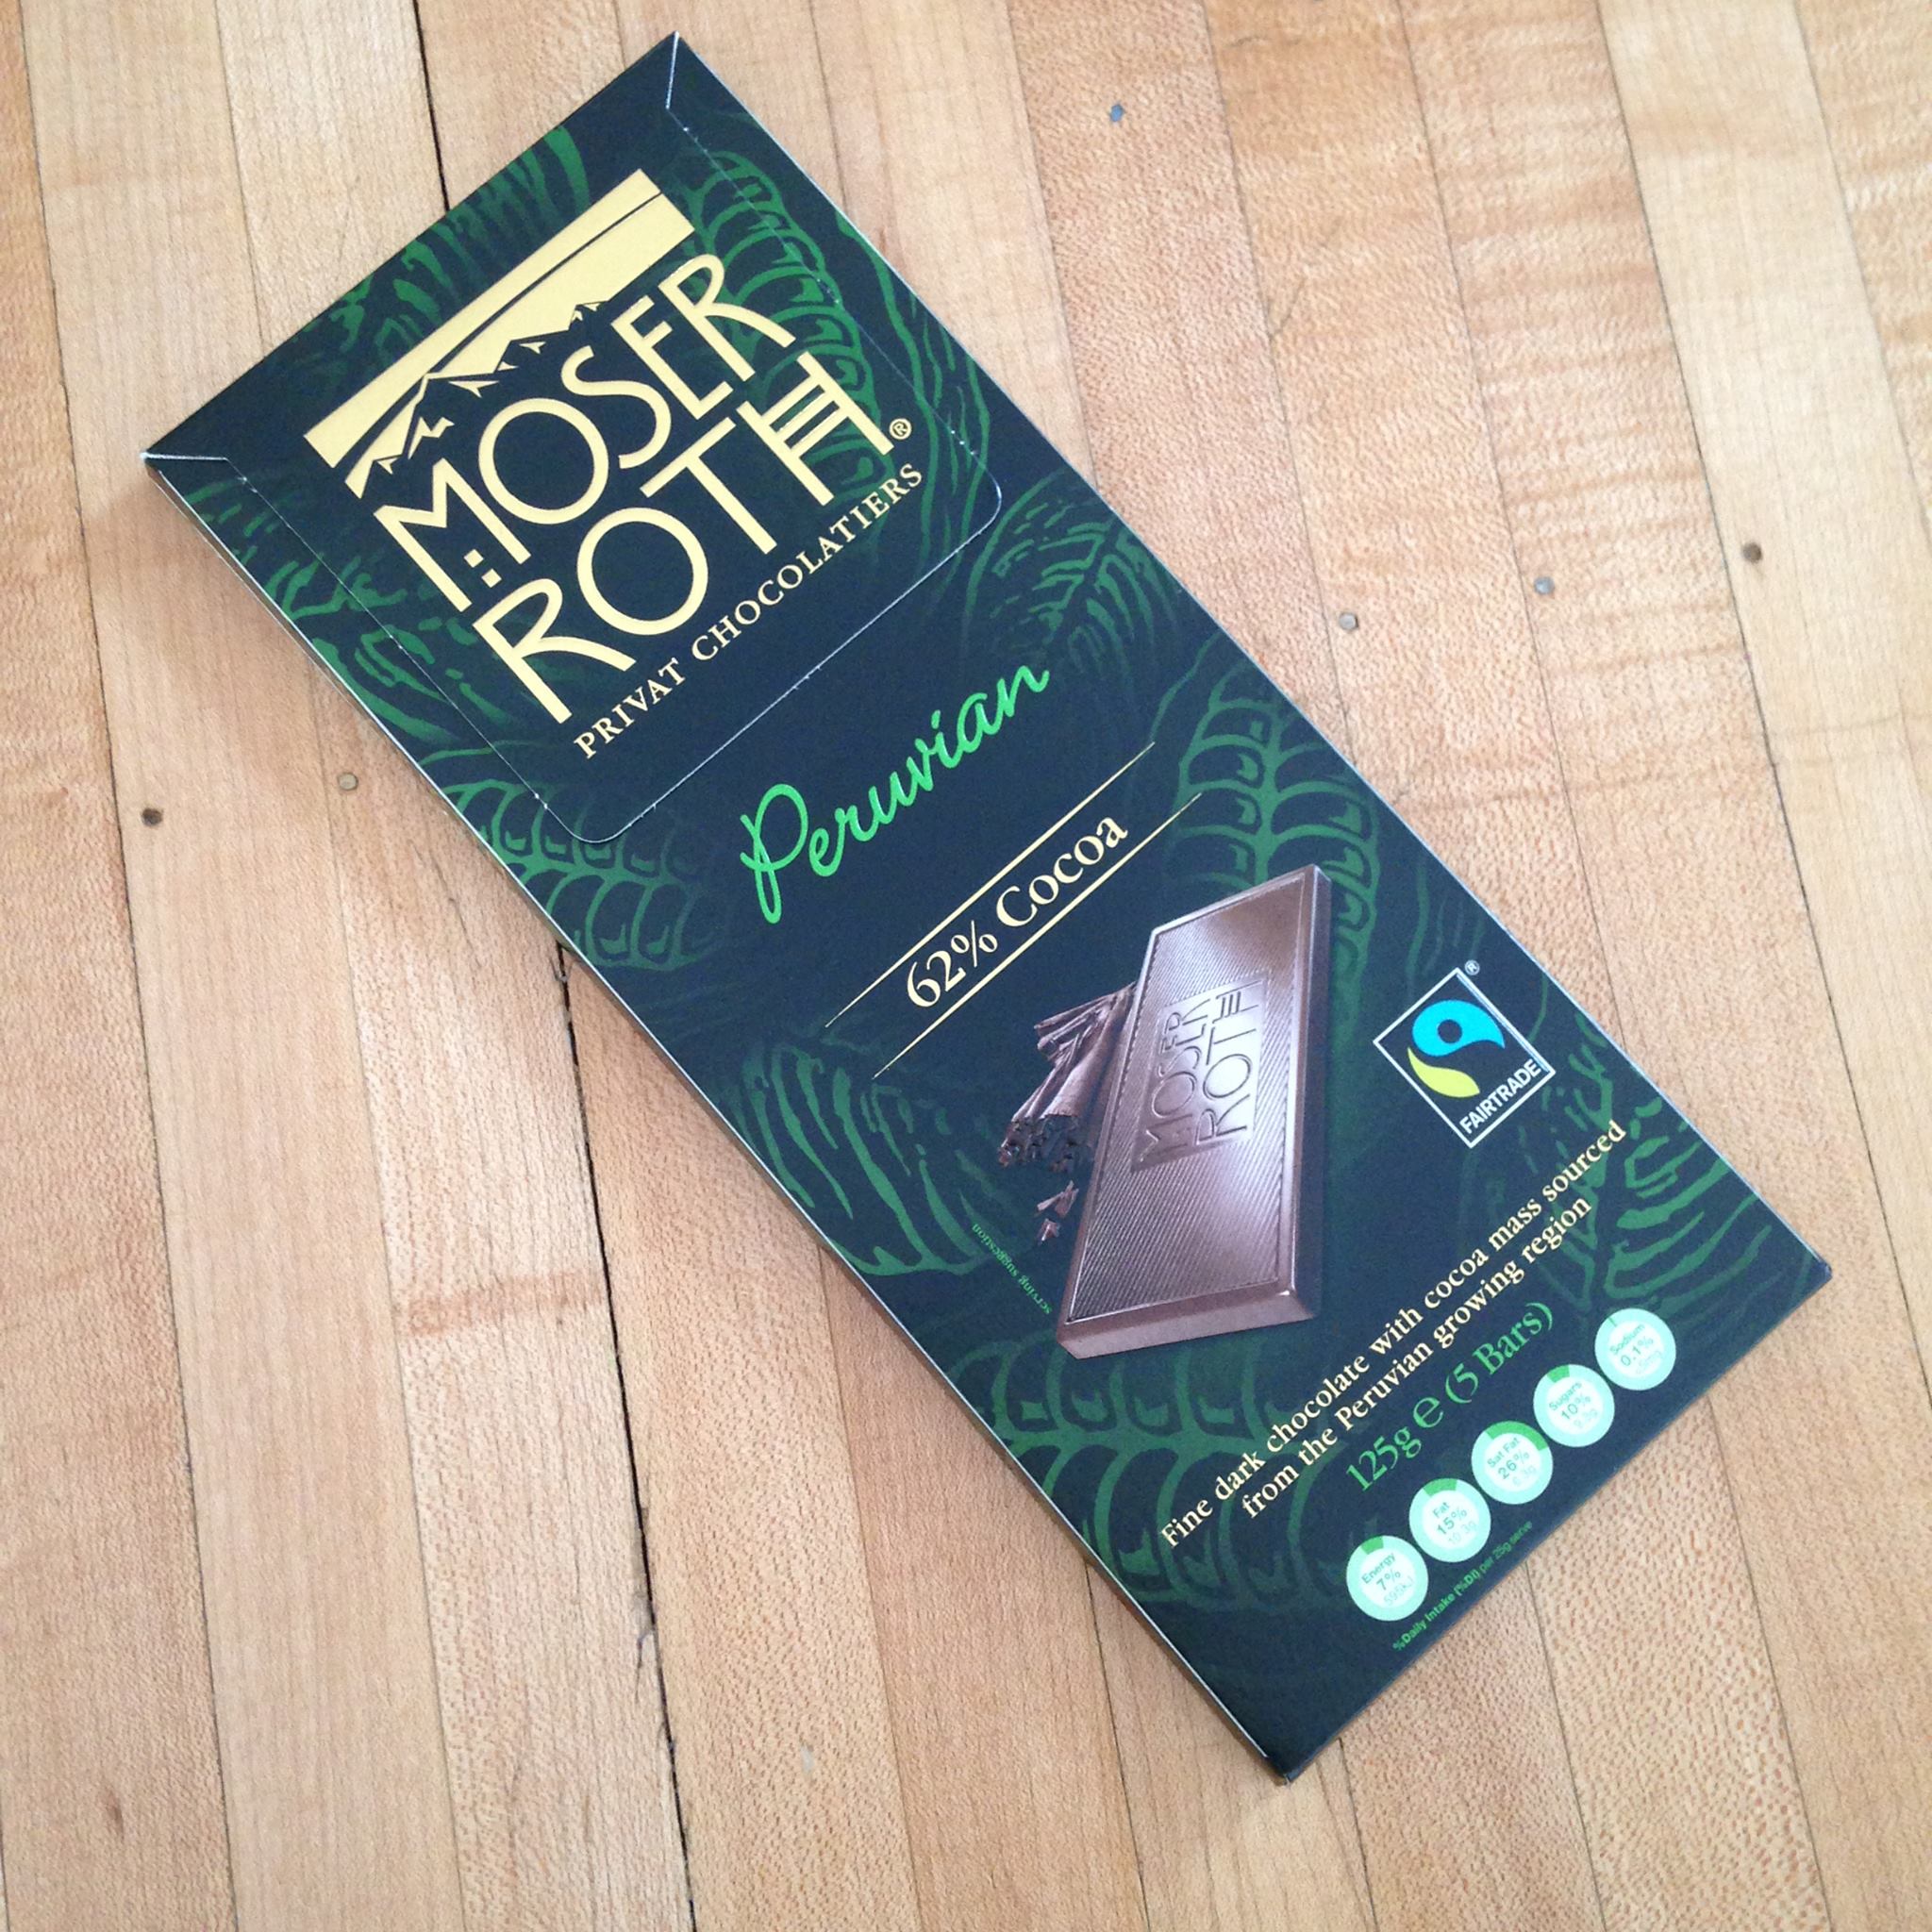 Горький шоколад можно в пост. Moser Roth шоколад. Немецкий шоколад Moser Roth. Moser Roth шоколад с перцем. Шоколад Органик Горький.